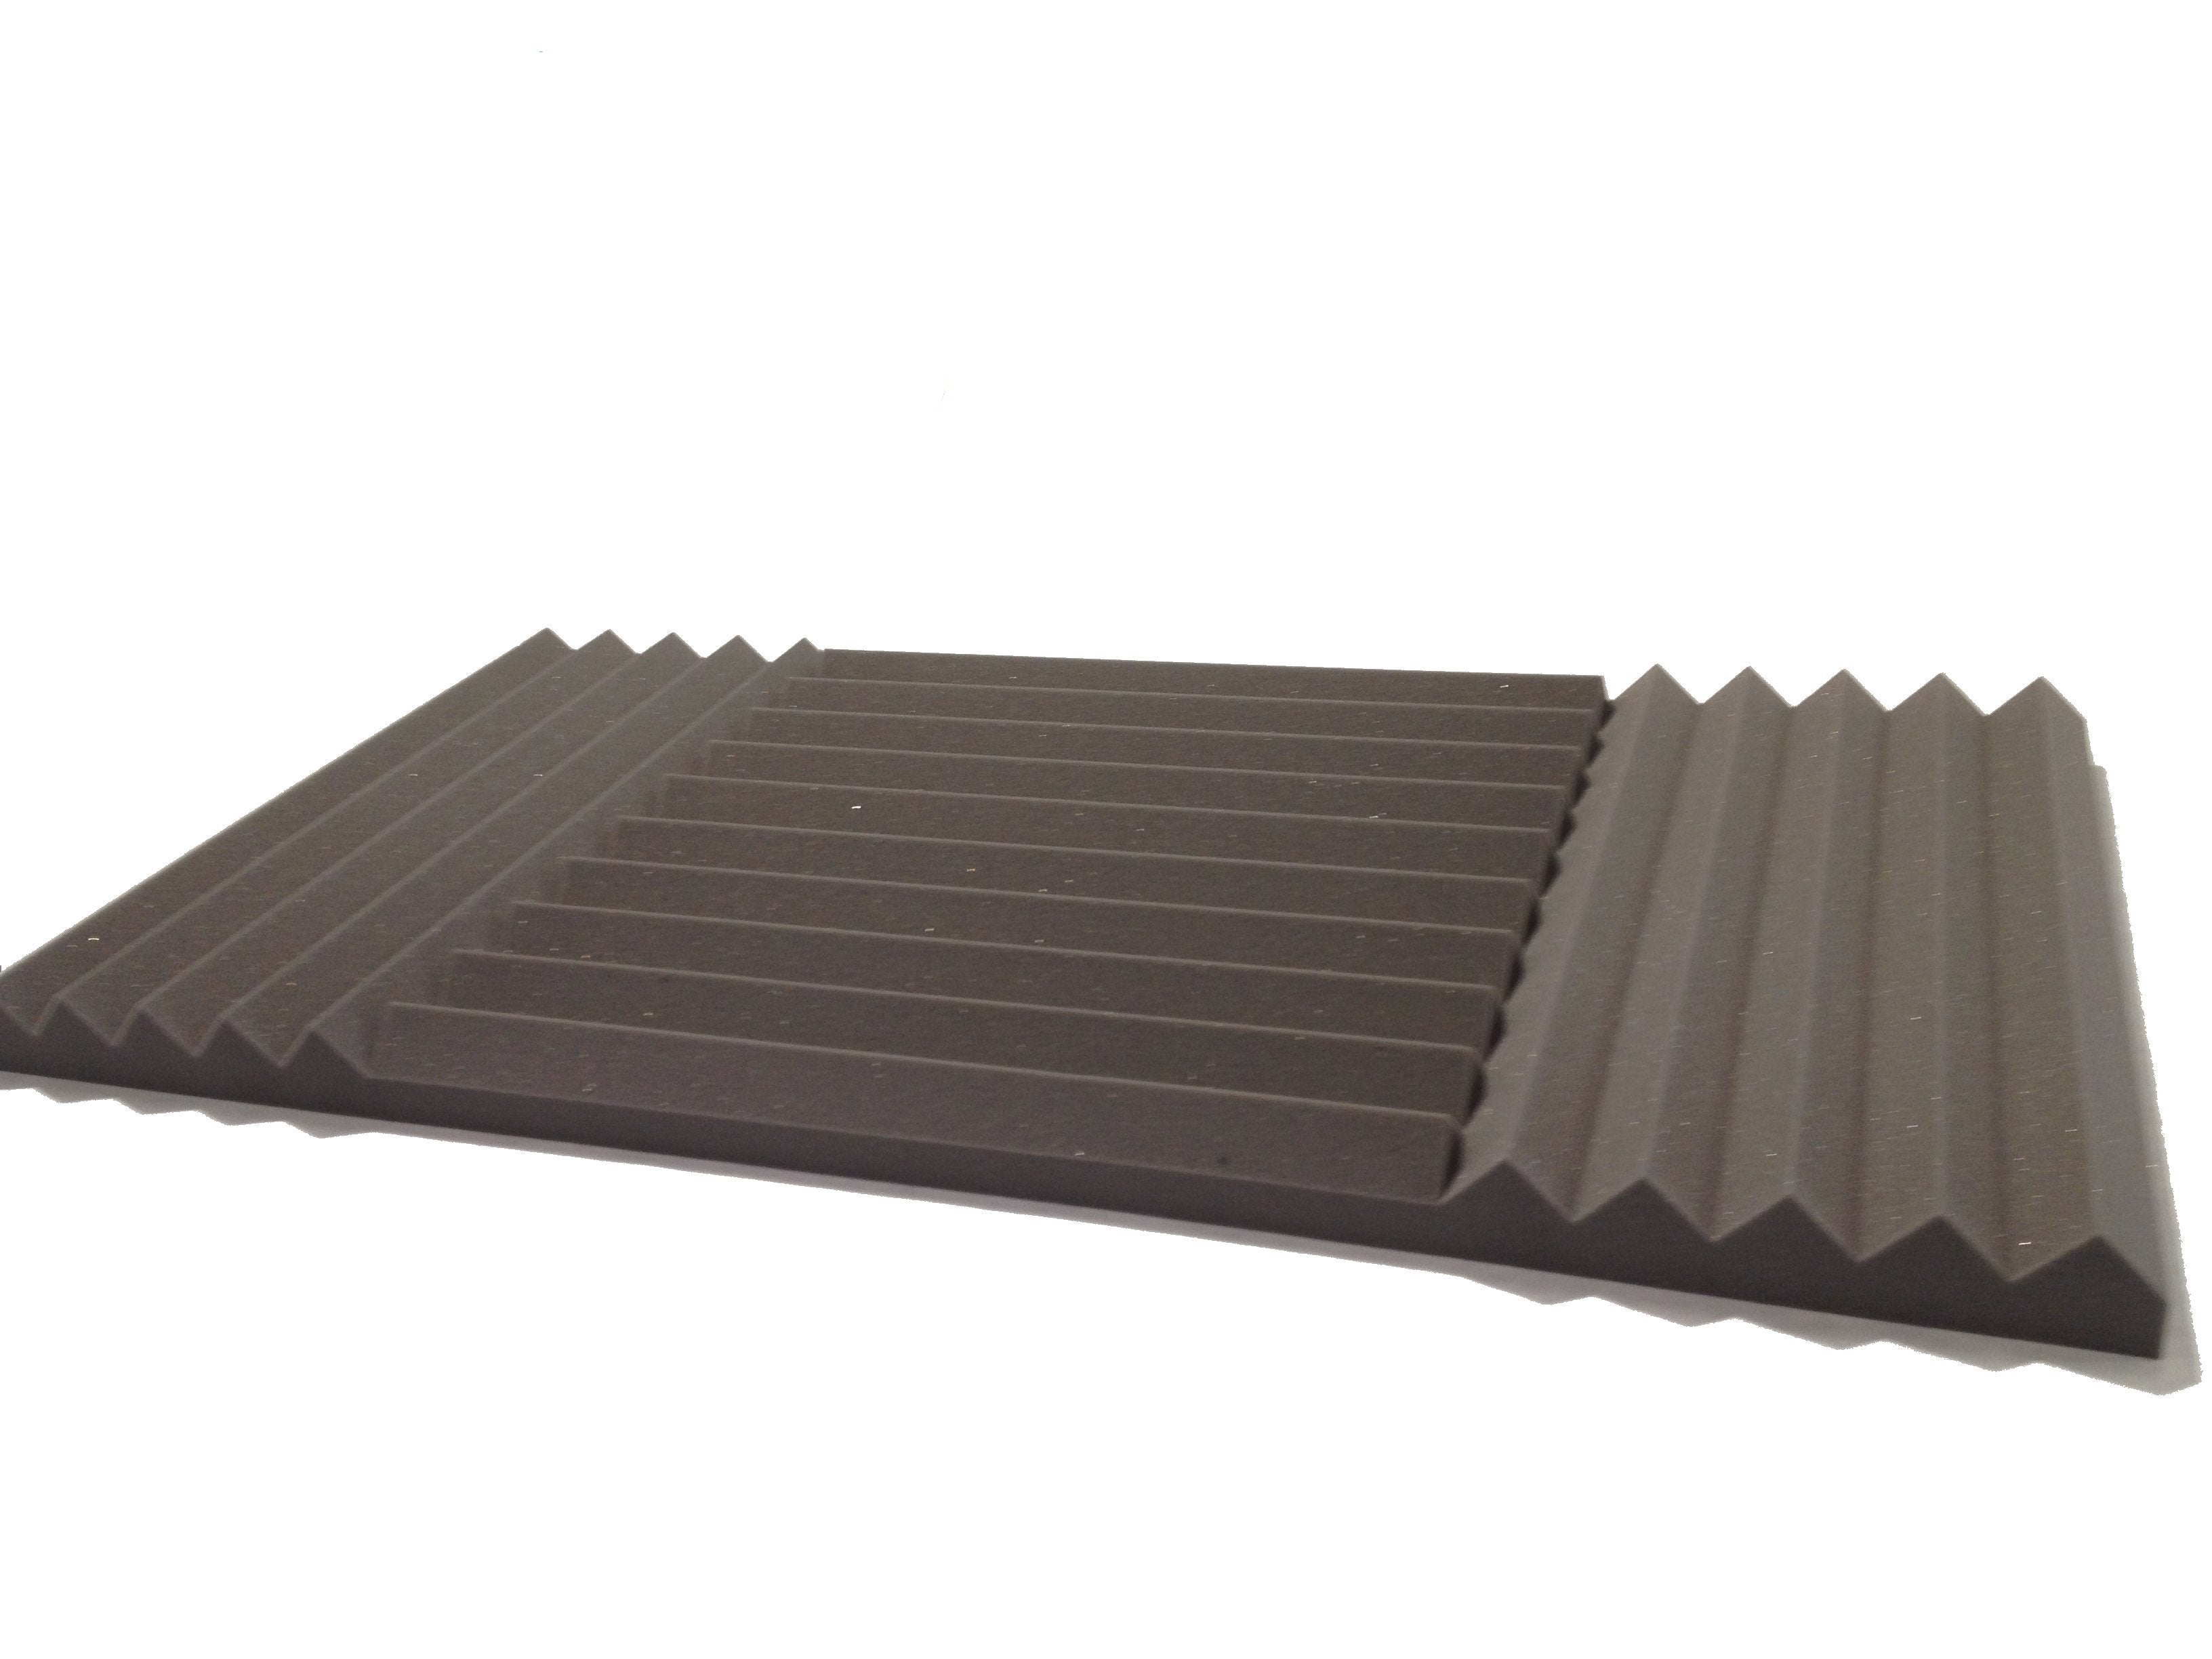 Wedge PRO 30"x15" Acoustic Studio Foam Tile Pack - Advanced Acoustics